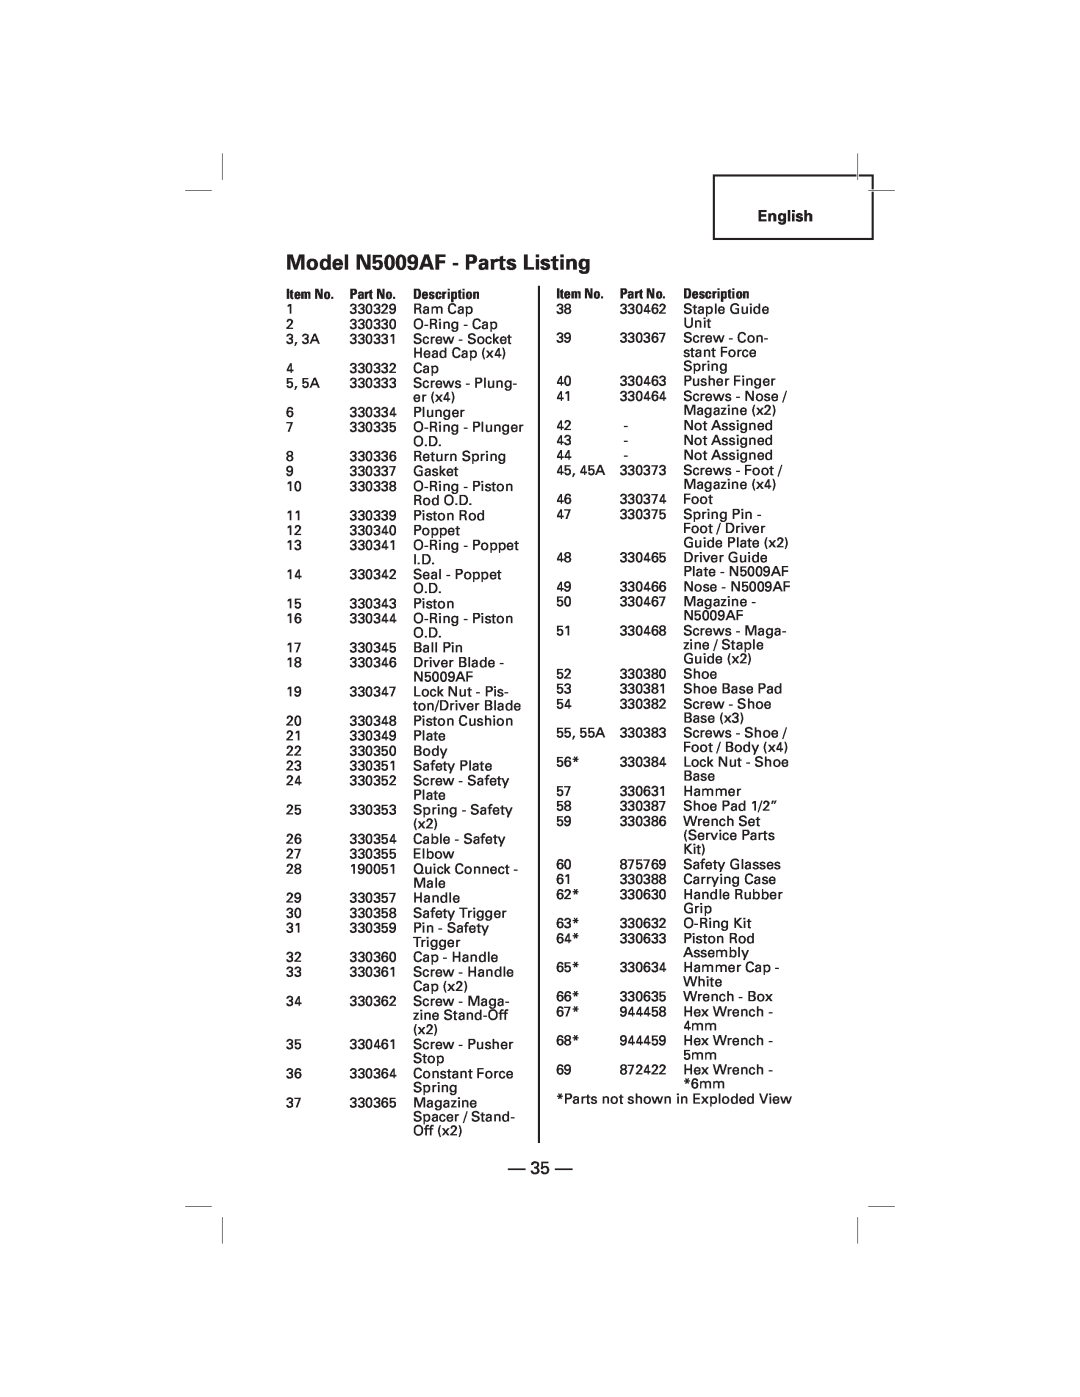 Hitachi NT50AF manual Model N5009AF - Parts Listing 